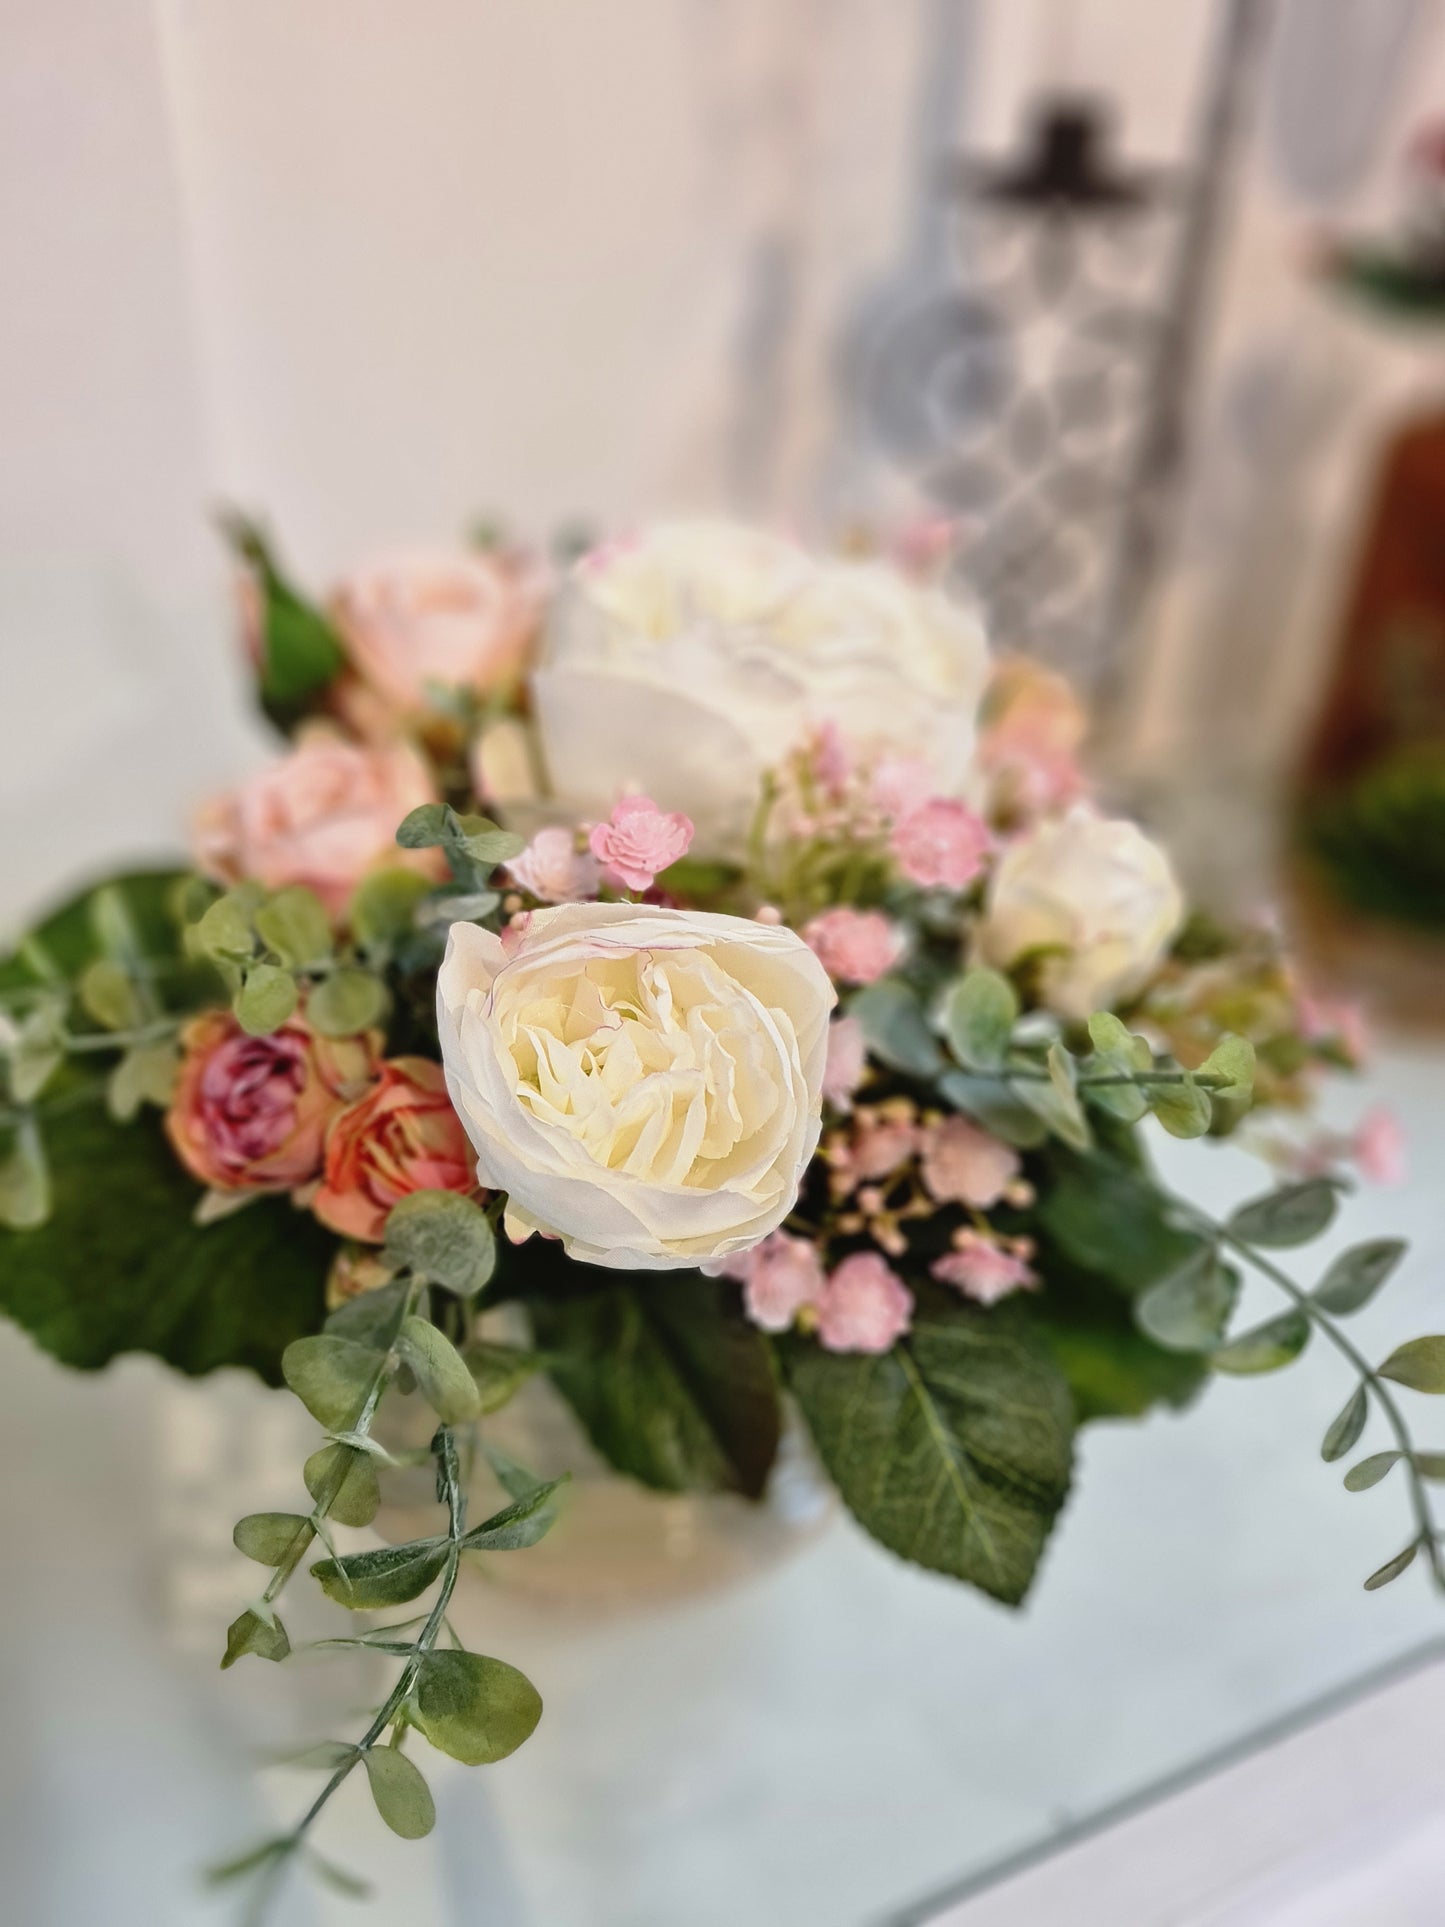 Blumenstrauß mit Rosen in weiß & rosa